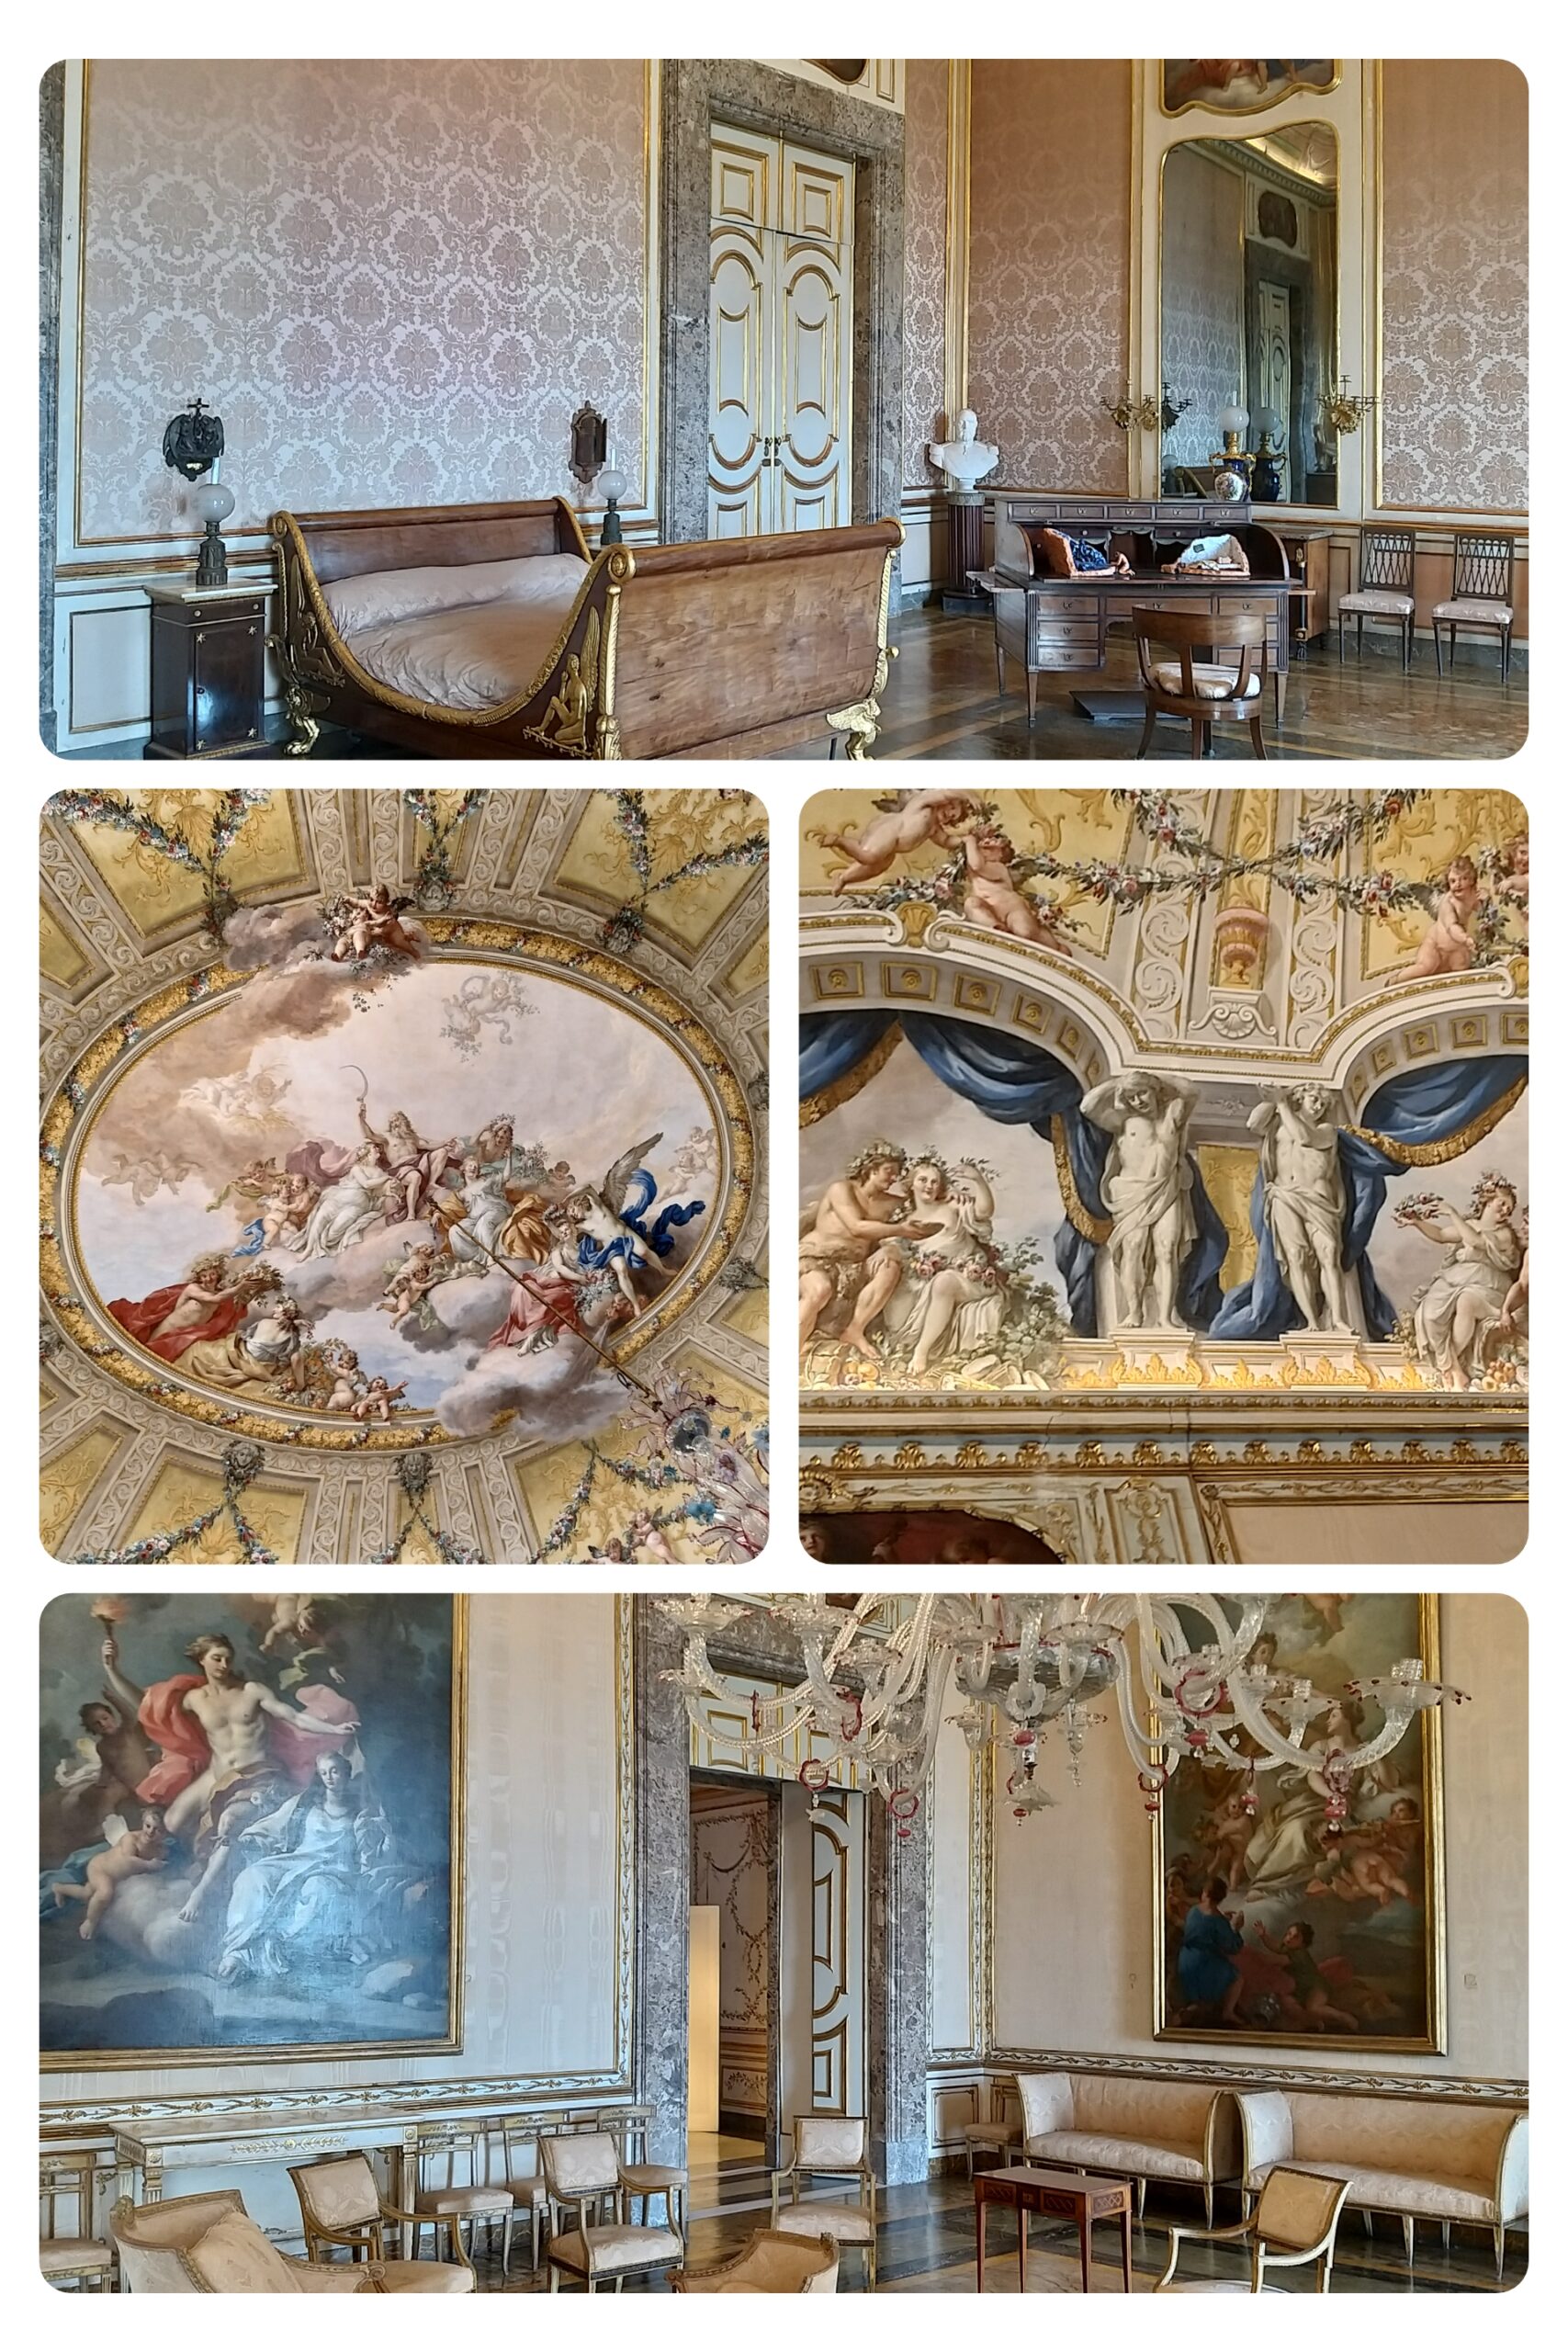 Chateau de Caserta – interieur